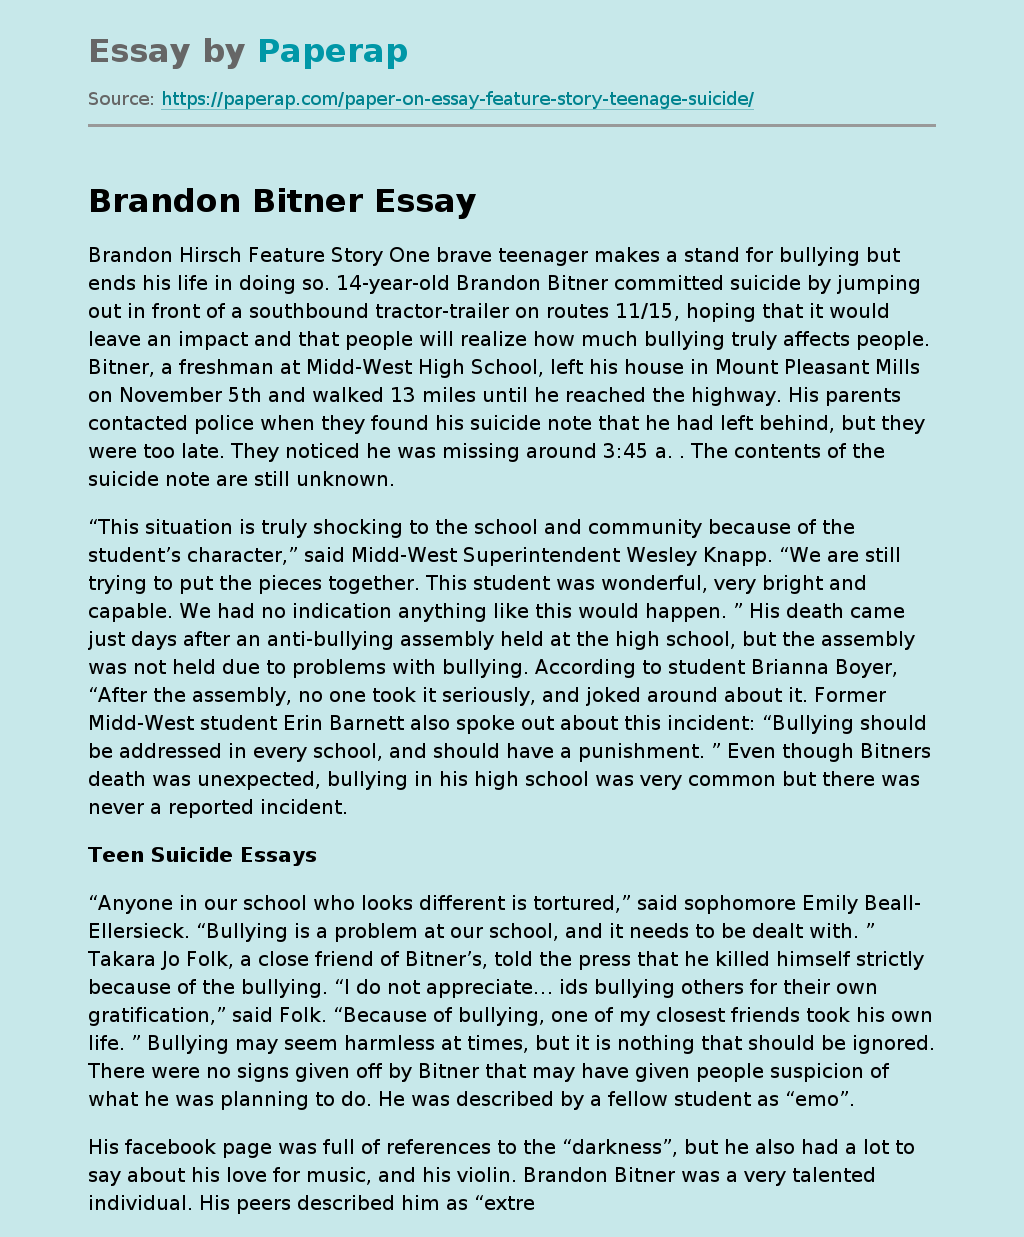 Brandon Bitner